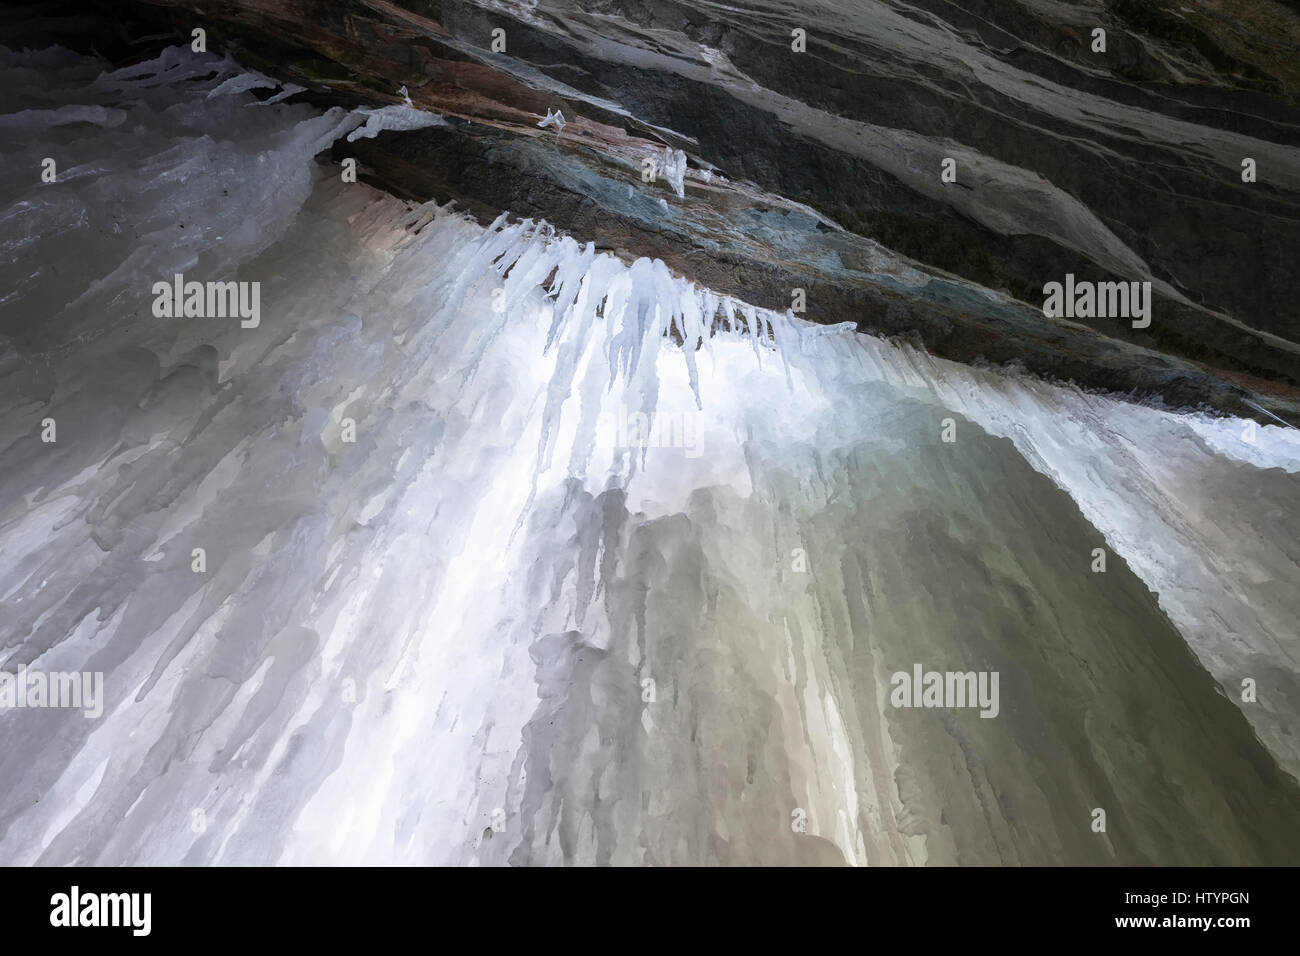 Nach oben auf das Eis aufbauen in einer Eishöhle gebildet durch Buttermilch fällt während des Winters in Hamilton, Ontario, Kanada. Stockfoto